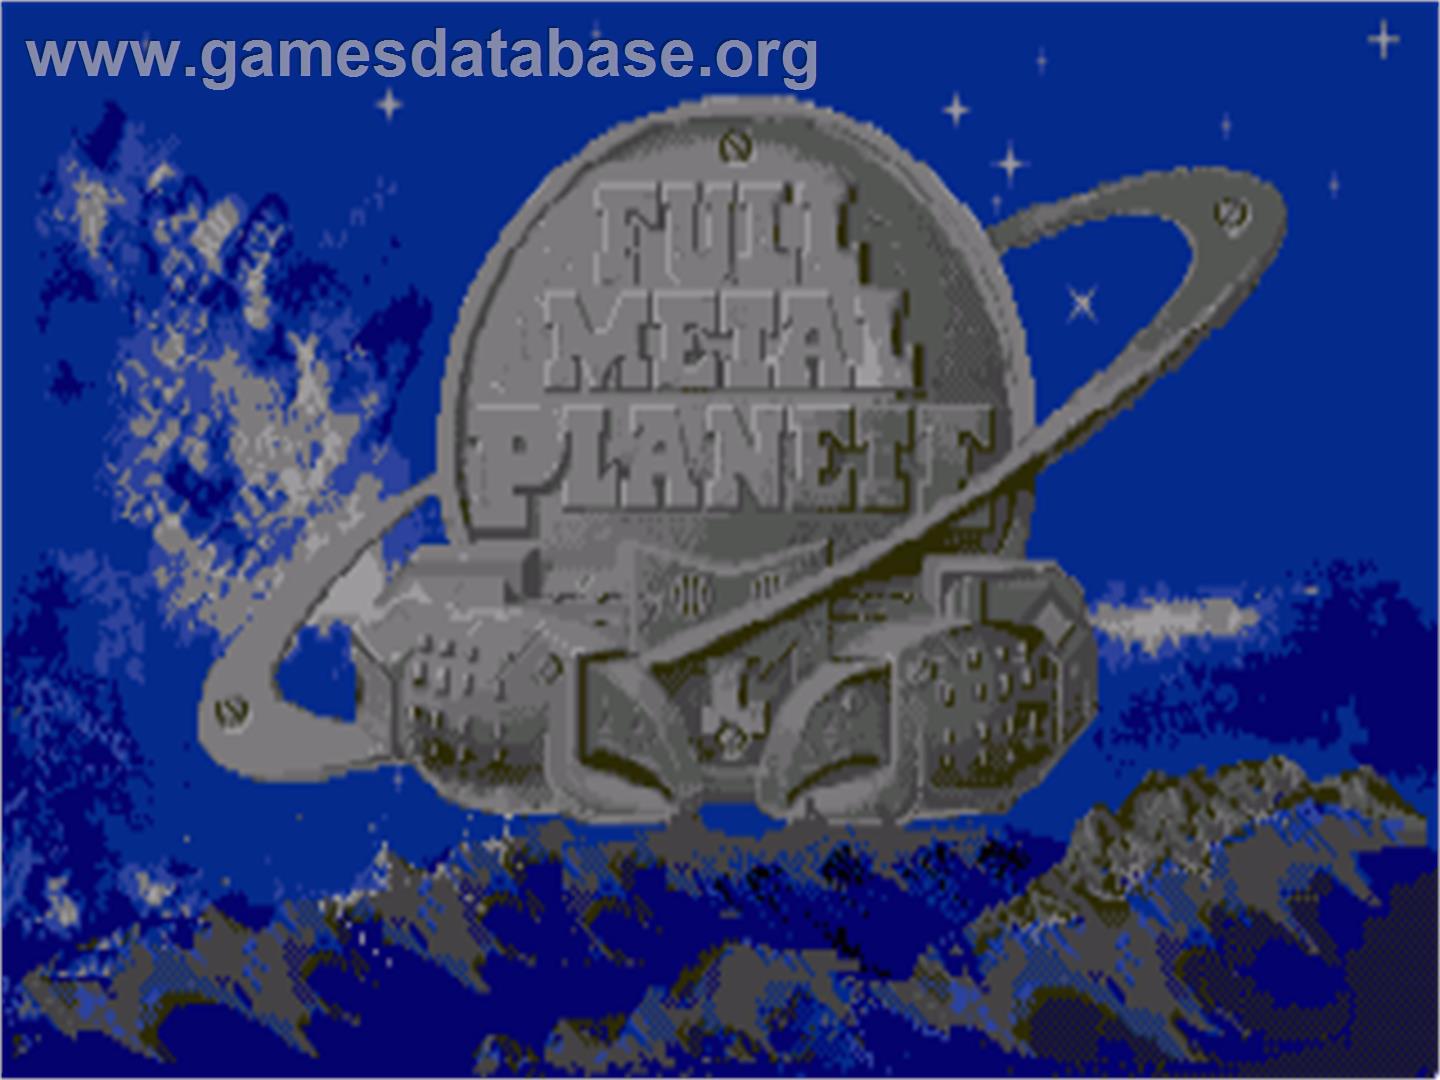 Full Metal Planete - Commodore Amiga - Artwork - Title Screen